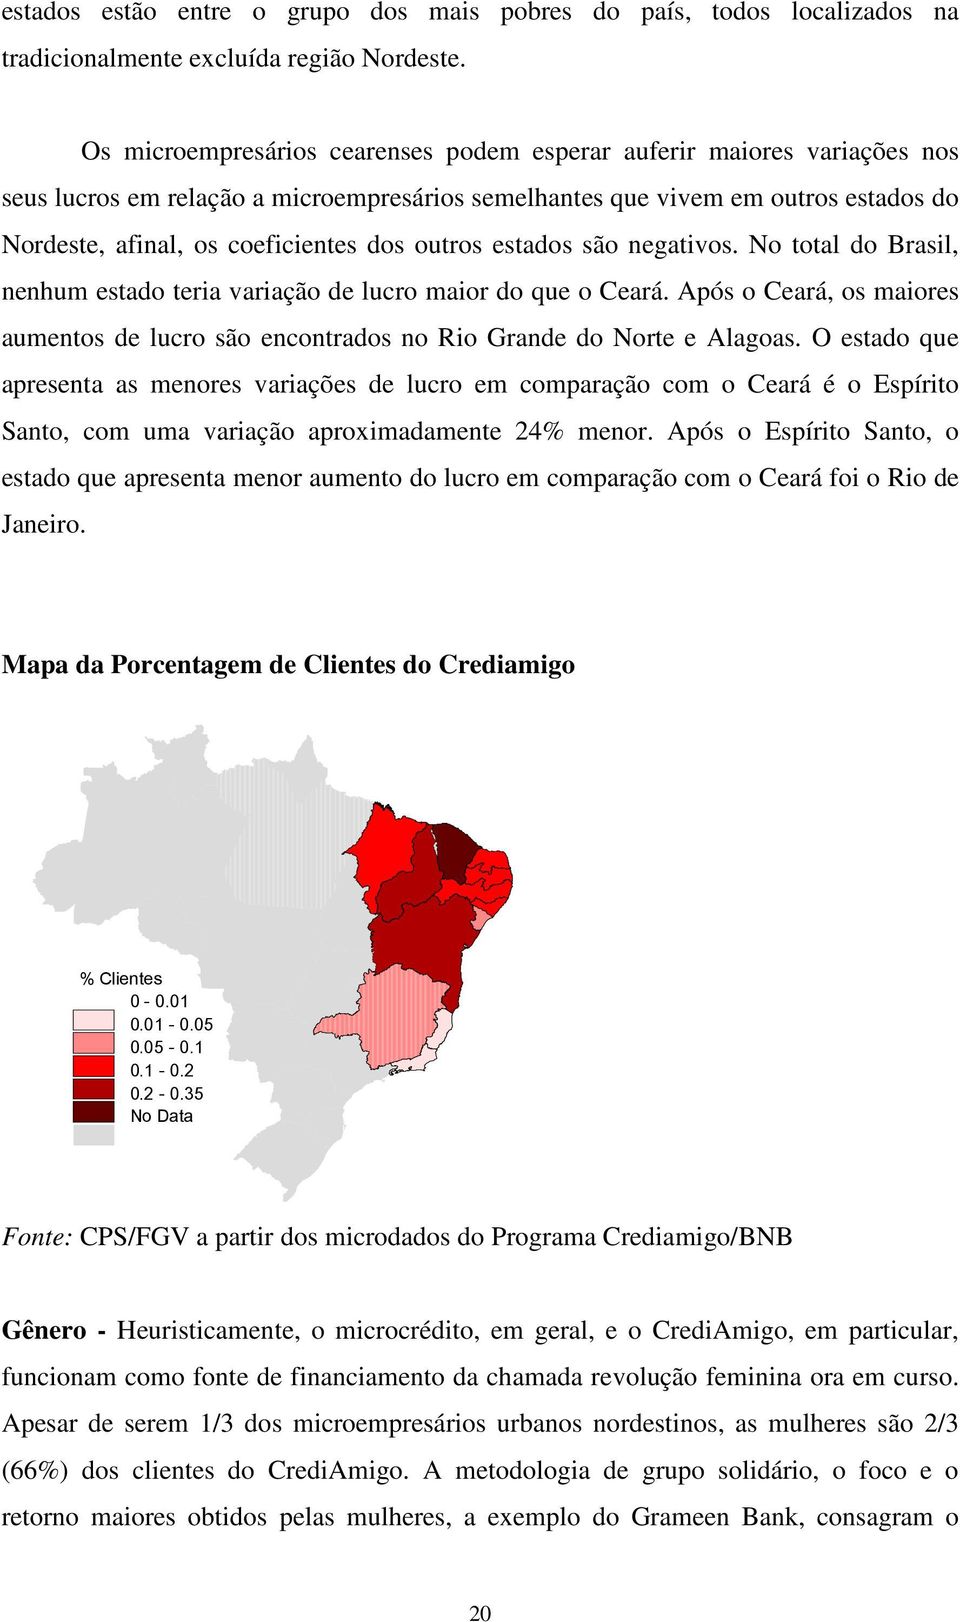 lucro maior do que o Ceará Após o Ceará, os maiores aumentos de lucro são encontrados no Rio Grande do Norte e Alagoas O estado que apresenta as menores variações de lucro em comparação com o Ceará é